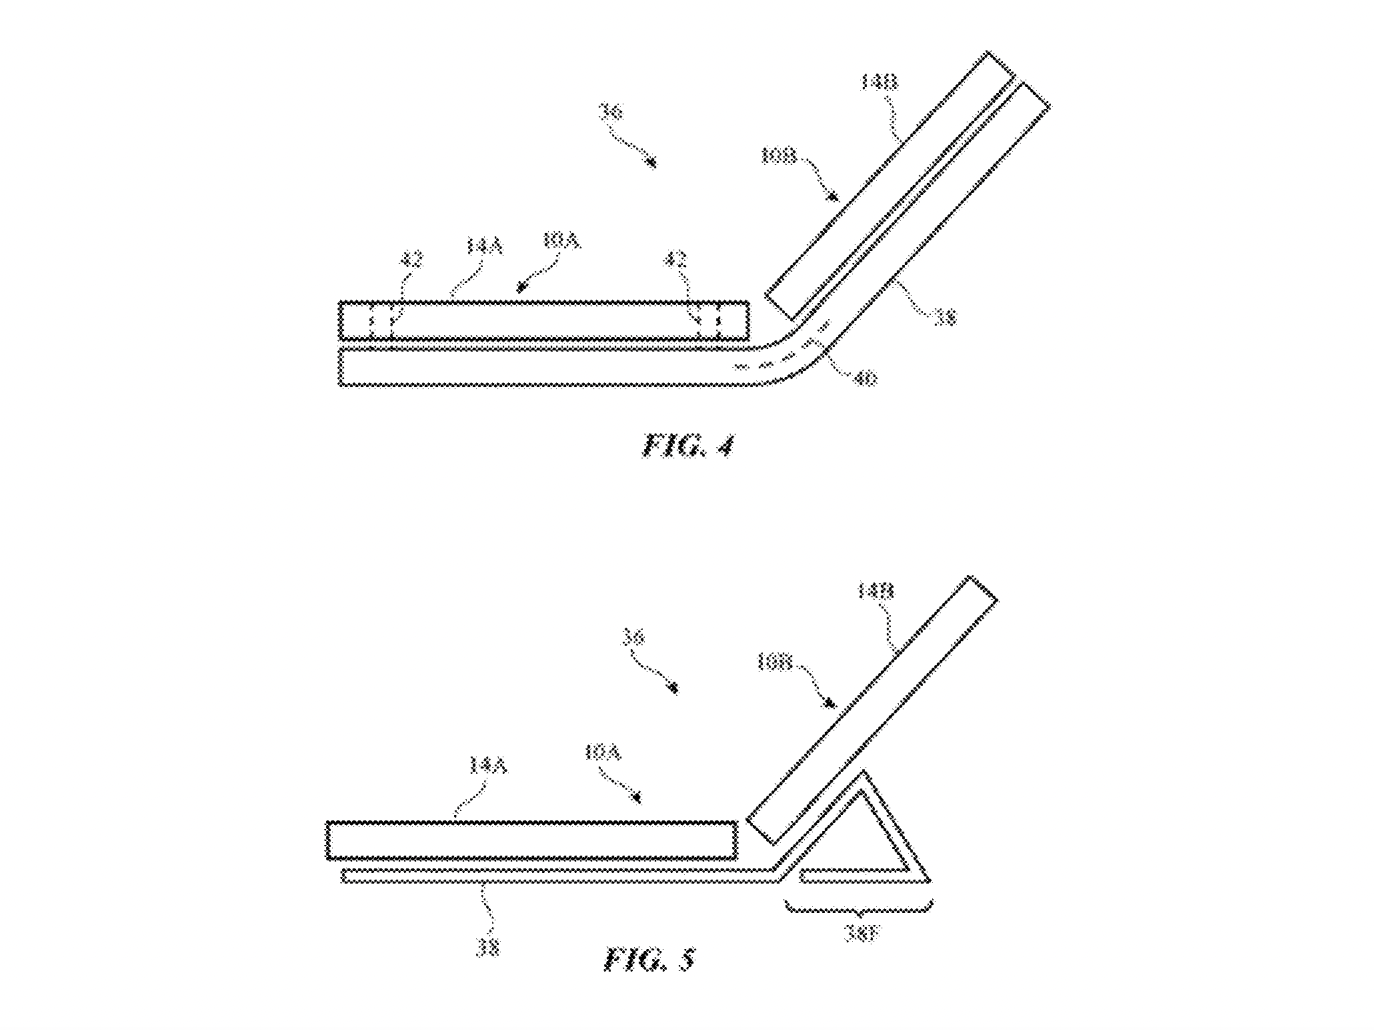 Een afbeelding uit Apples patentaanvraag van 16 maart